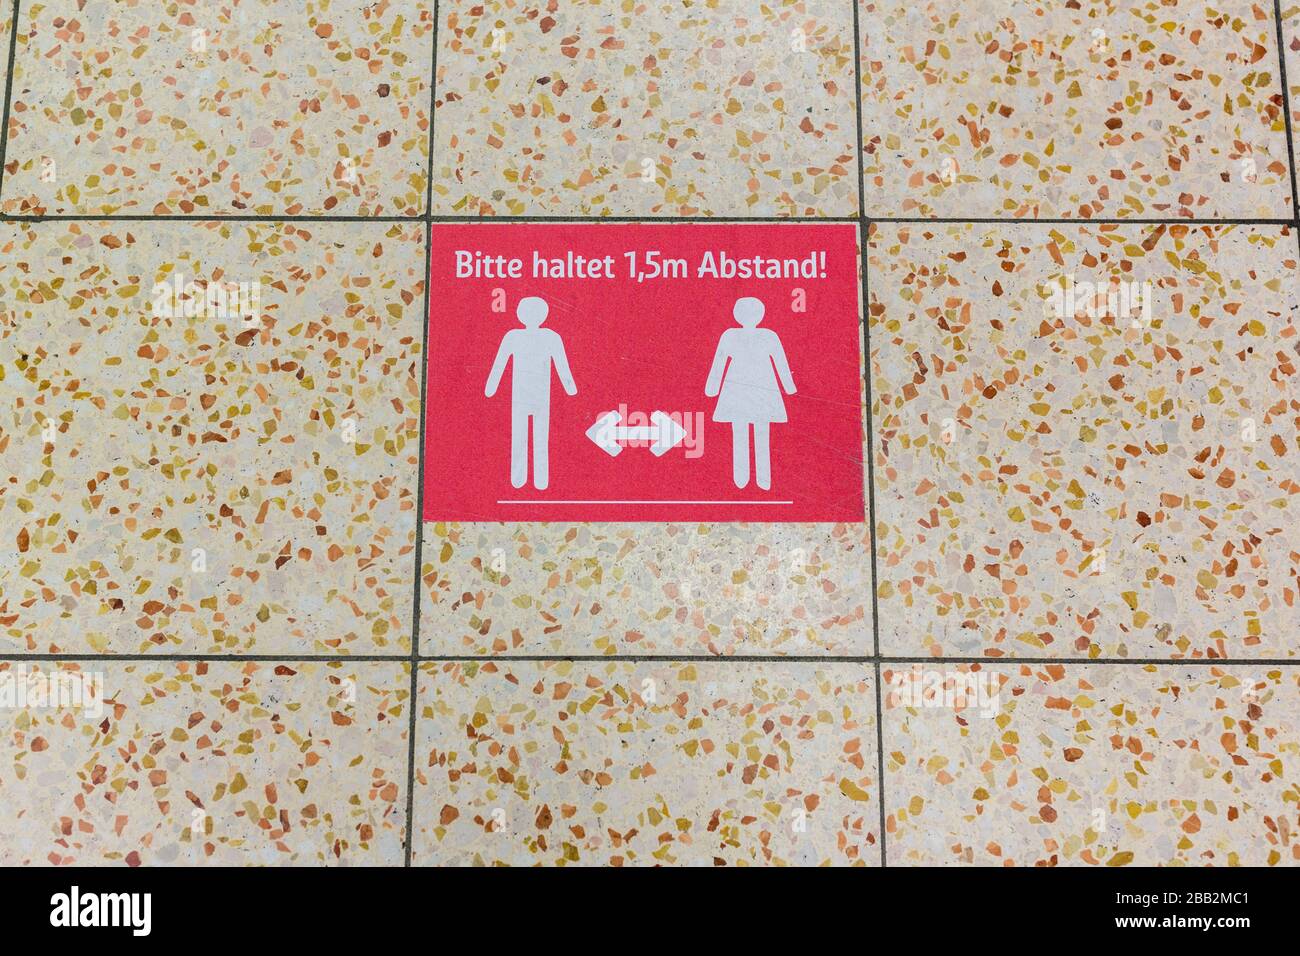 Schild auf dem Boden eines Rewe-Supermarktes. Es lautet "Bitte haltet 1,5m Abstand!" (Bitte 1,5 Meter Abstand halten). Wegen Coronavirus. Stockfoto